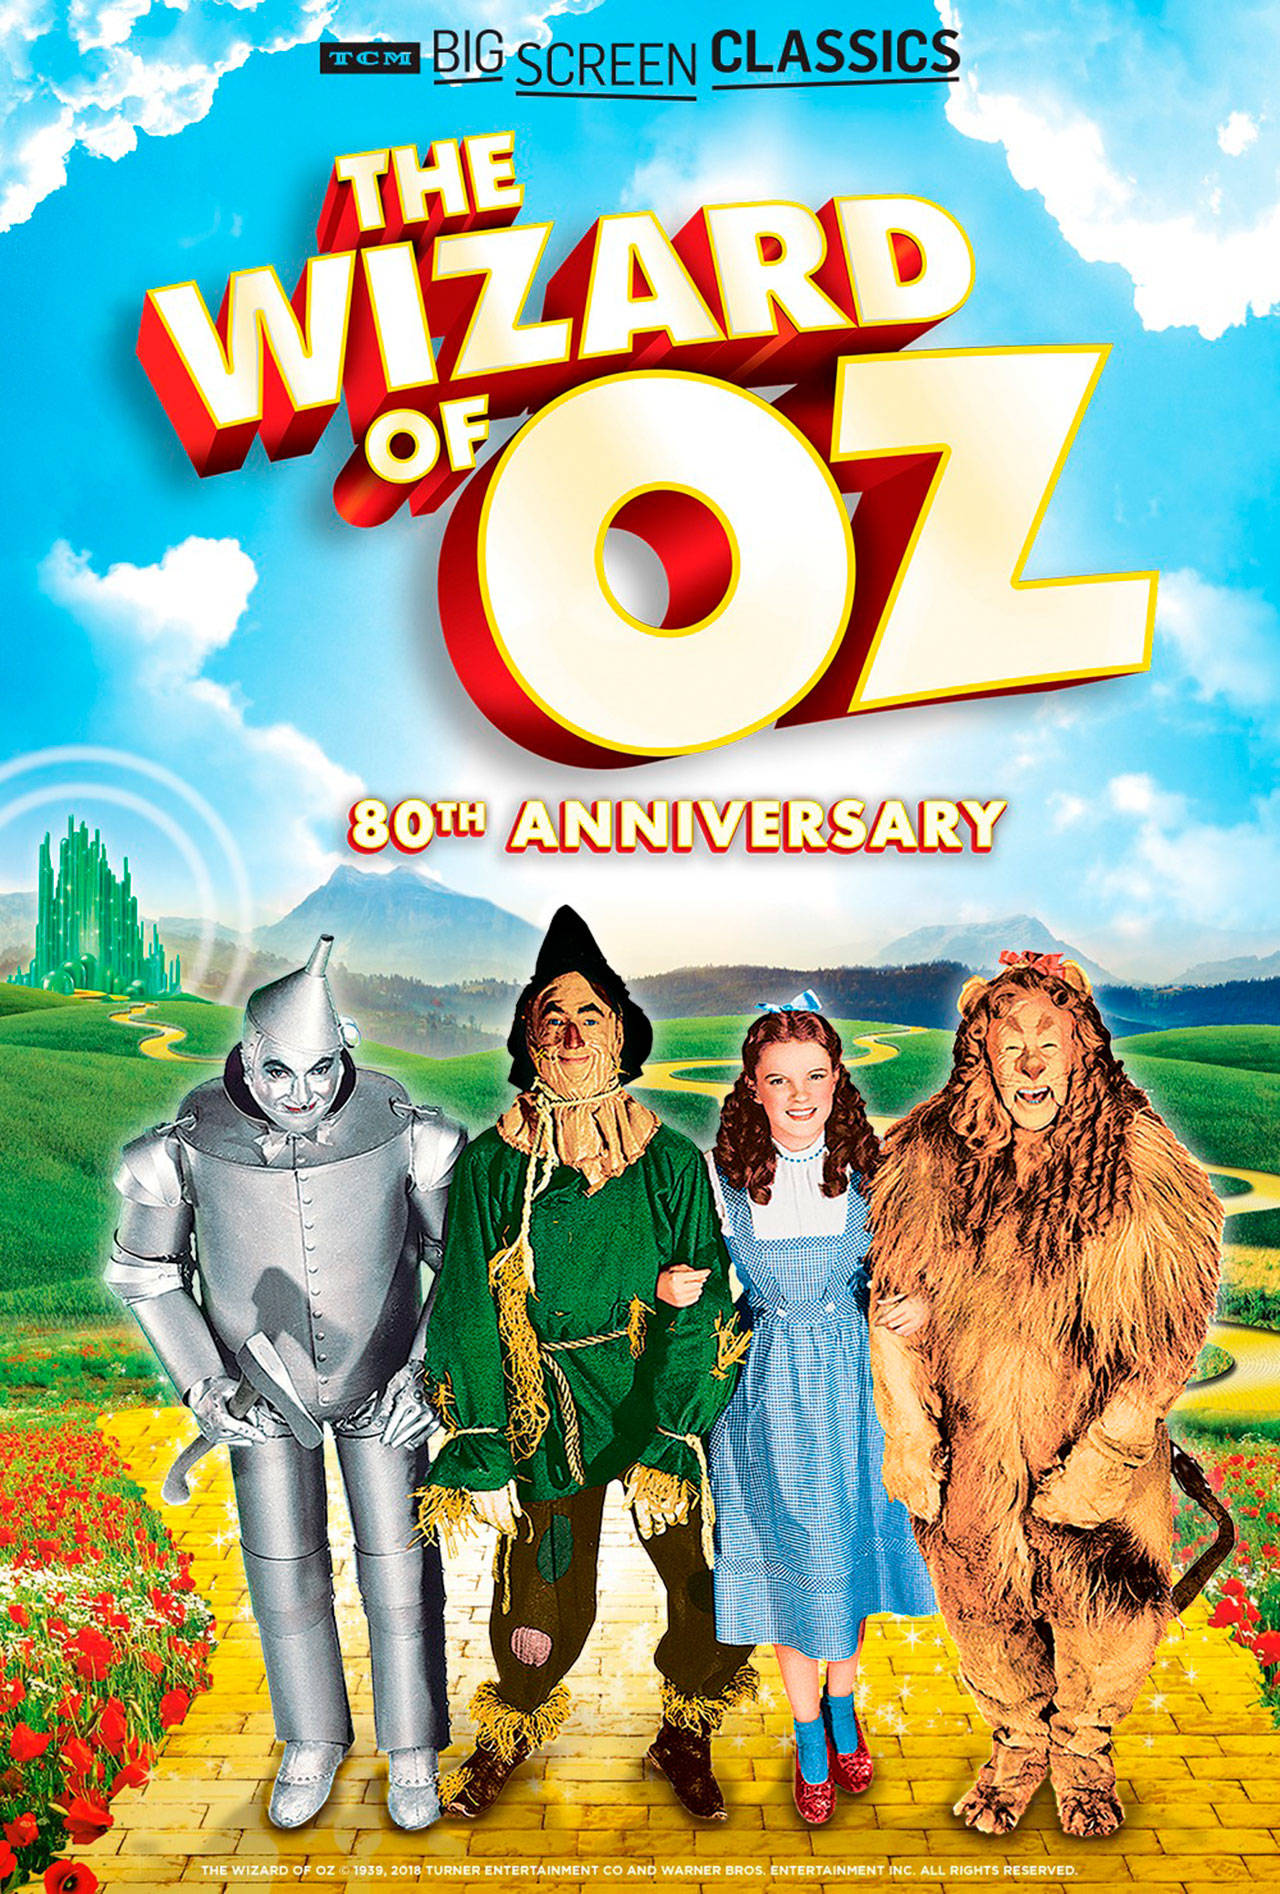 Image courtesy of Bainbridge Cinemas | “The Wizard of Oz” (1939) will screen at Bainbridge Cinemas at 7 p.m. Wednesday, Jan. 30.